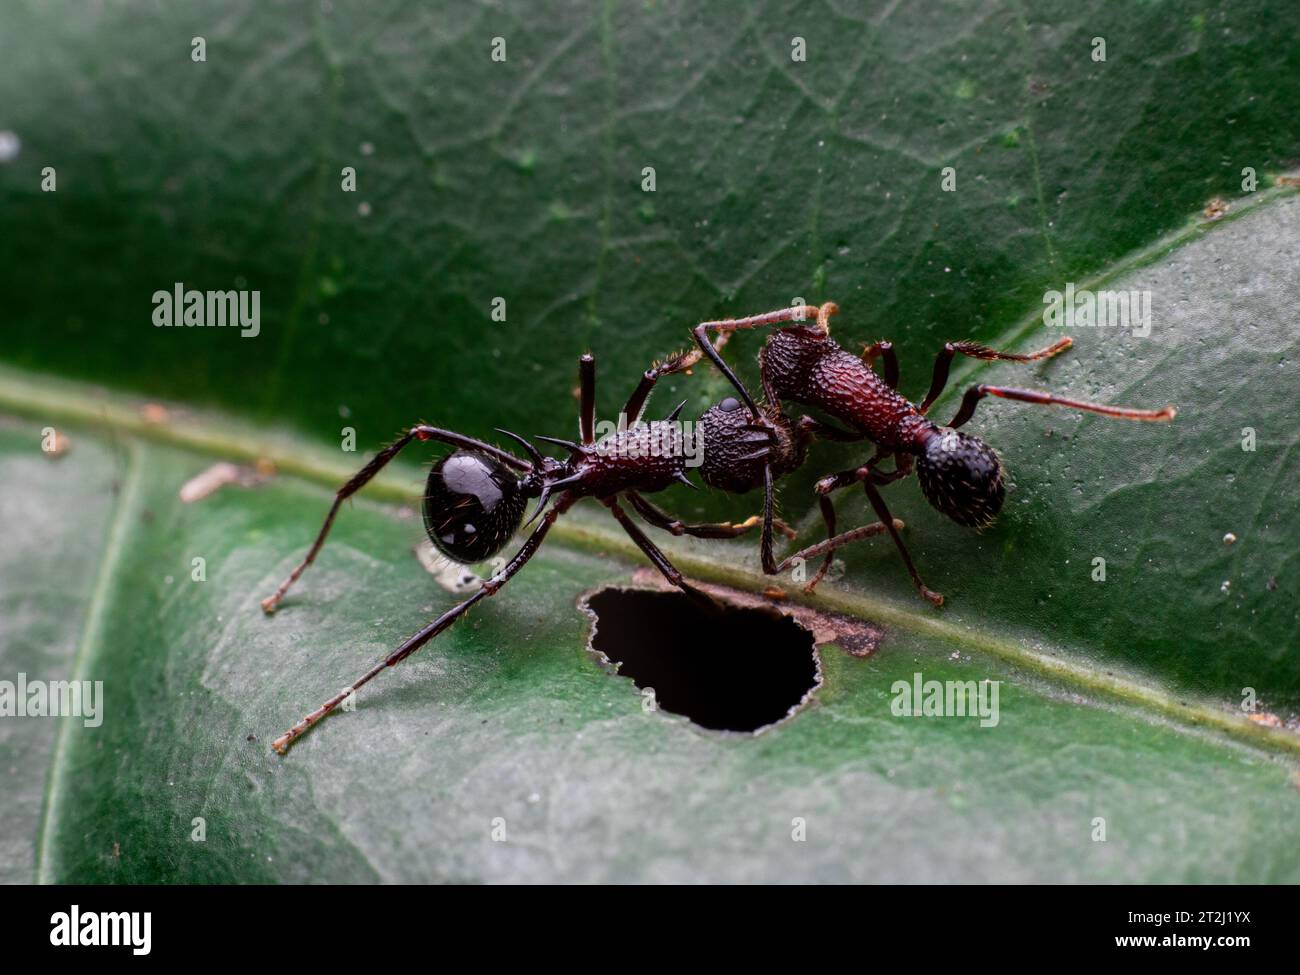 due formiche combattono su una foglia verde Foto Stock